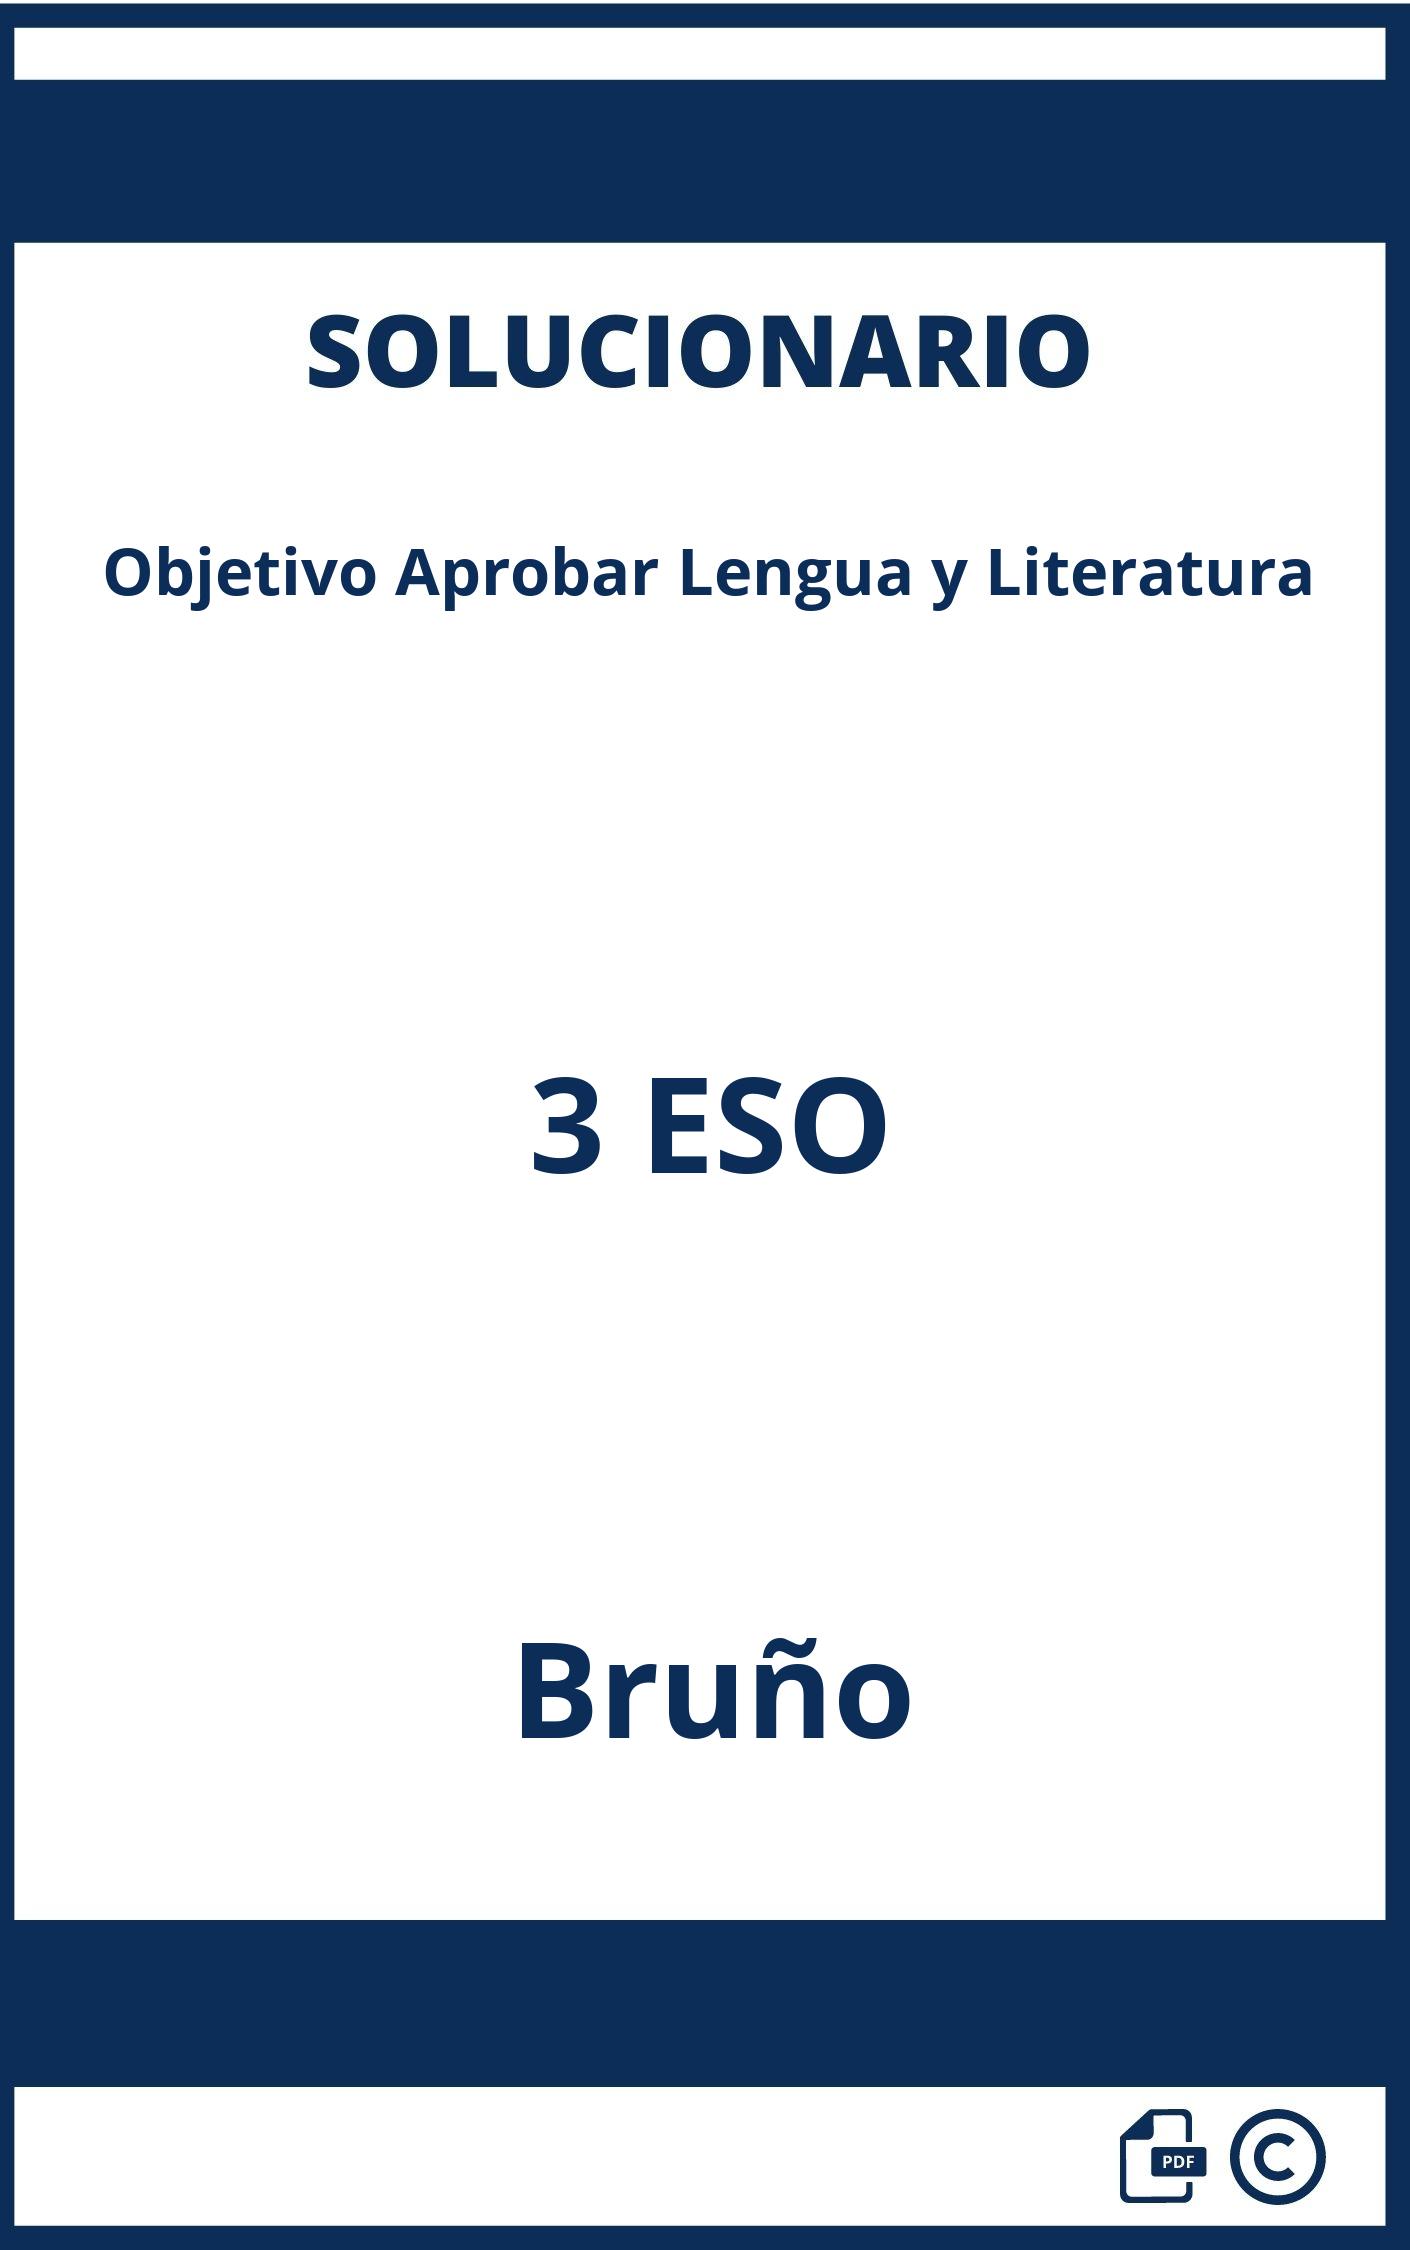 Solucionario Objetivo Aprobar Lengua y Literatura 3 ESO Bruño